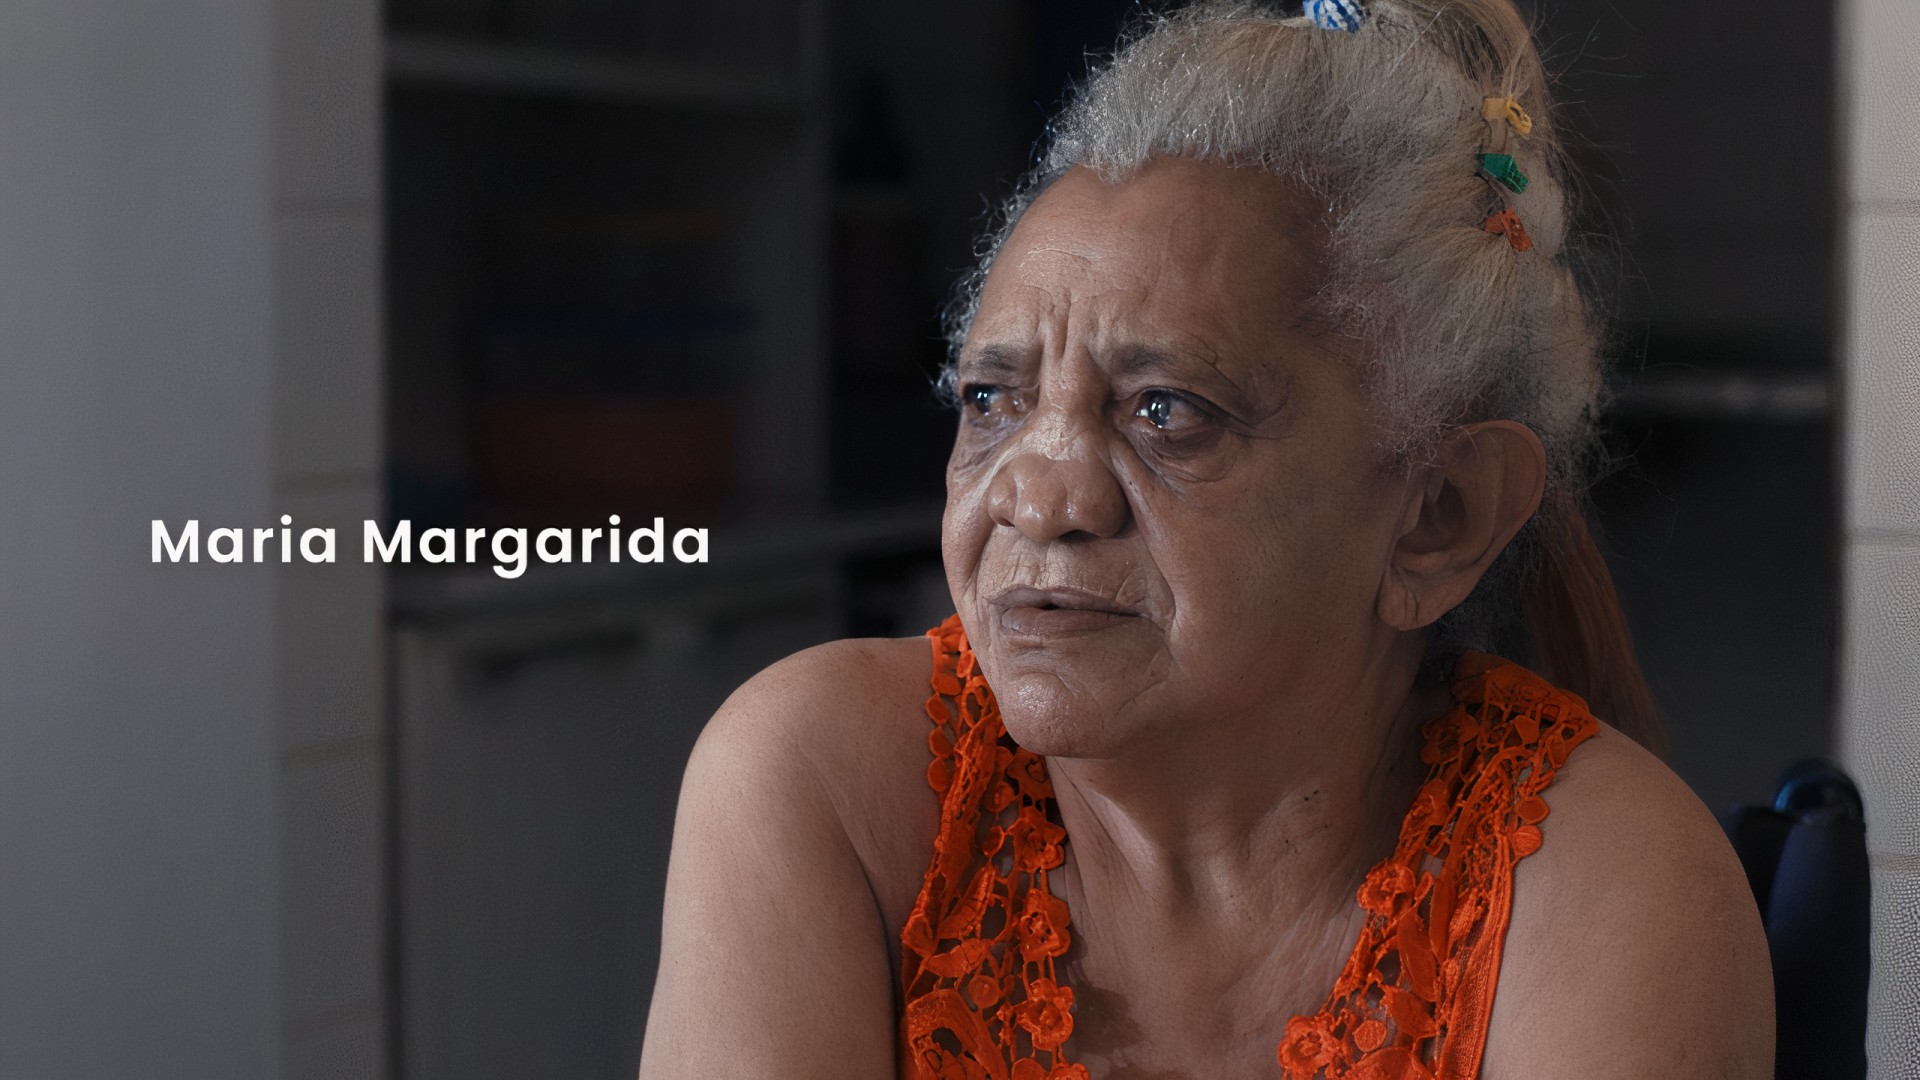 Longa cearense 'A Colônia' fala de bairro de Maracanaú fundado como uma zona de confinamento compulsório para portadores de hanseníase (Foto: reprodução)